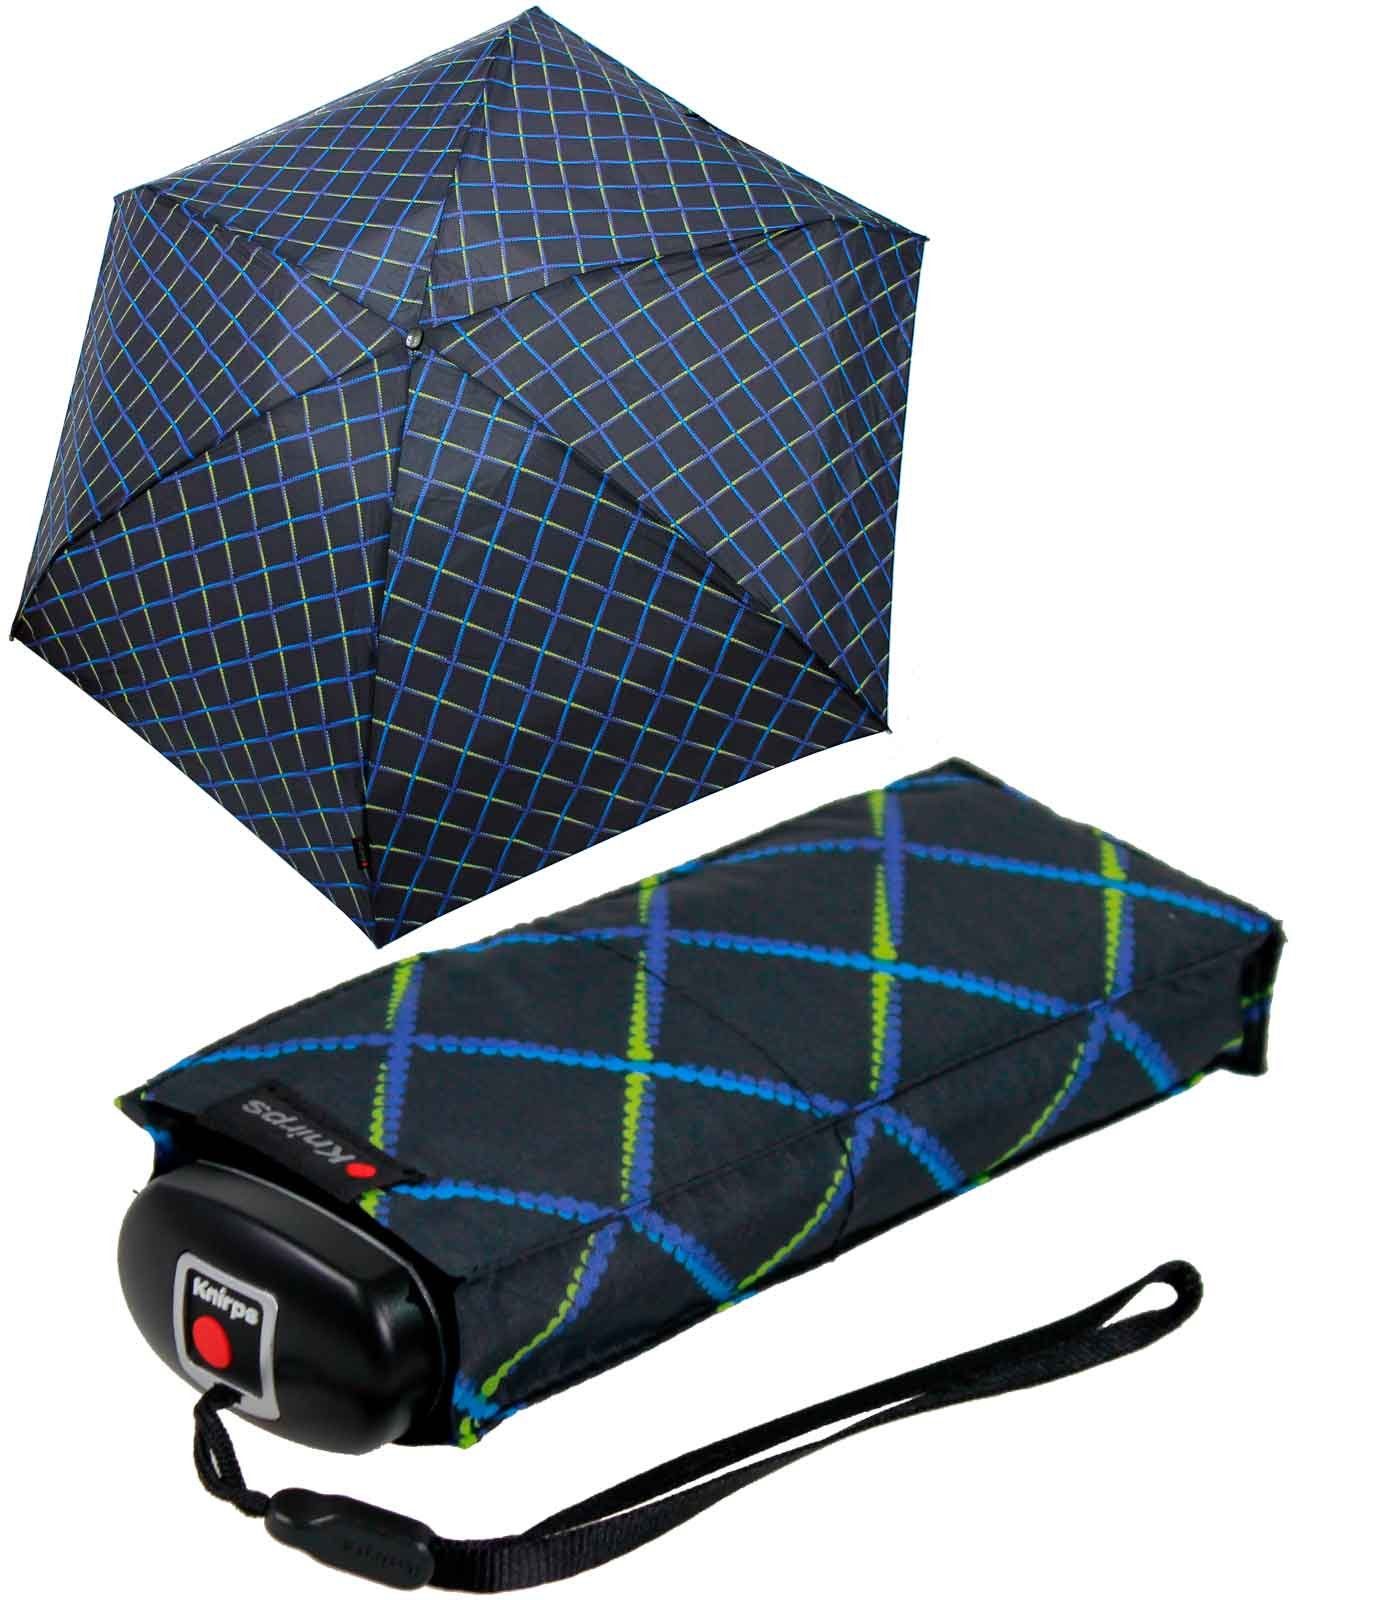 jede Taschenregenschirm Begleiter, Tasche kompakt, in der Mini-Schirm klein passt Travel zuverlässige Knirps® leicht der